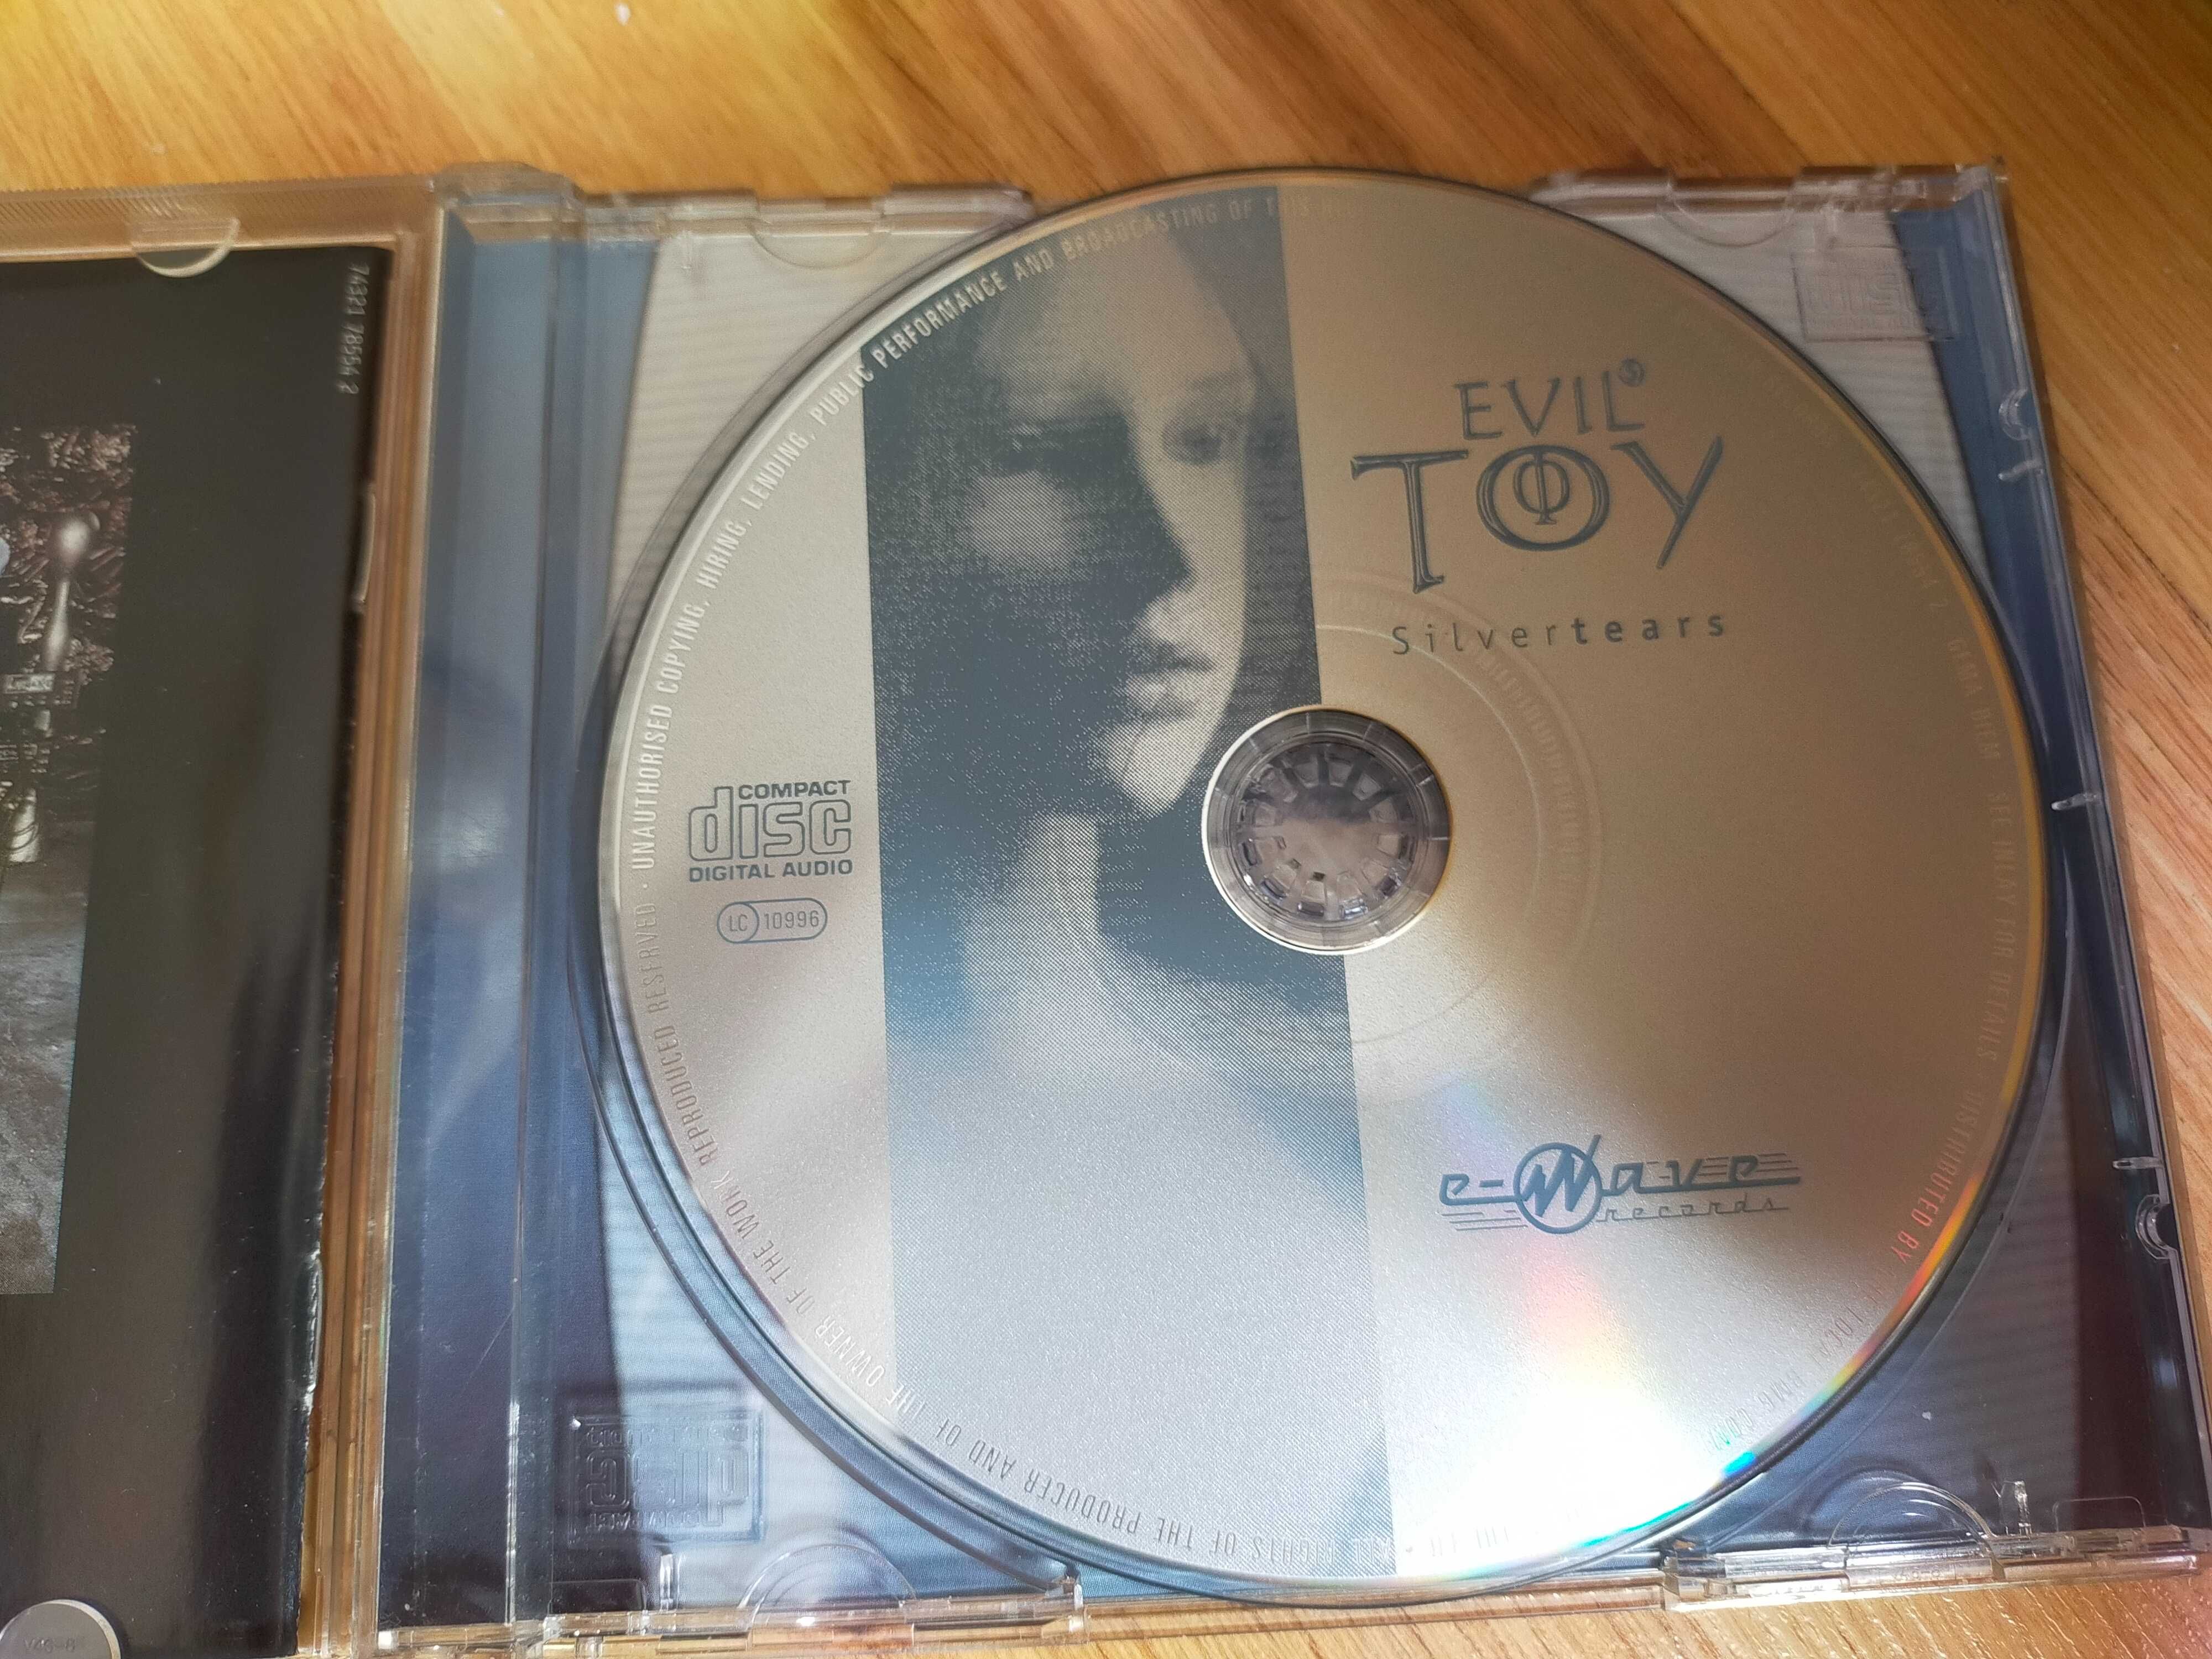 EVILS TOY " "Silvertears" CD. Jak nowa